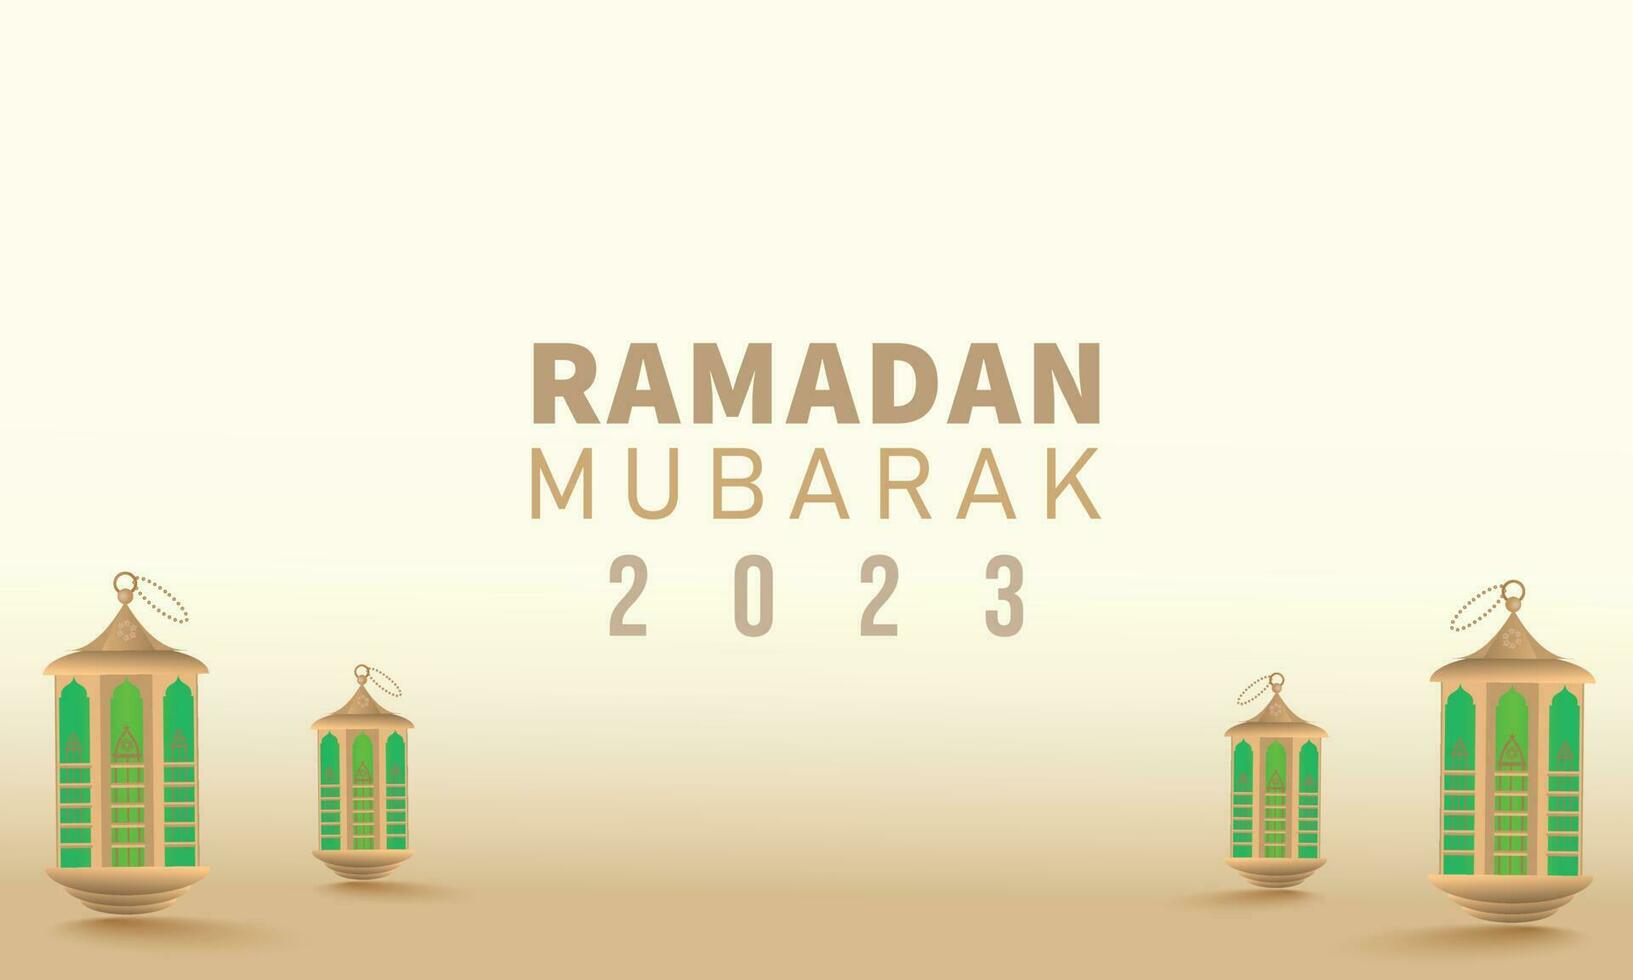 Ramadan kareem salutation. islamique conception, or couleur, carte, Ramadan Contexte vecteur